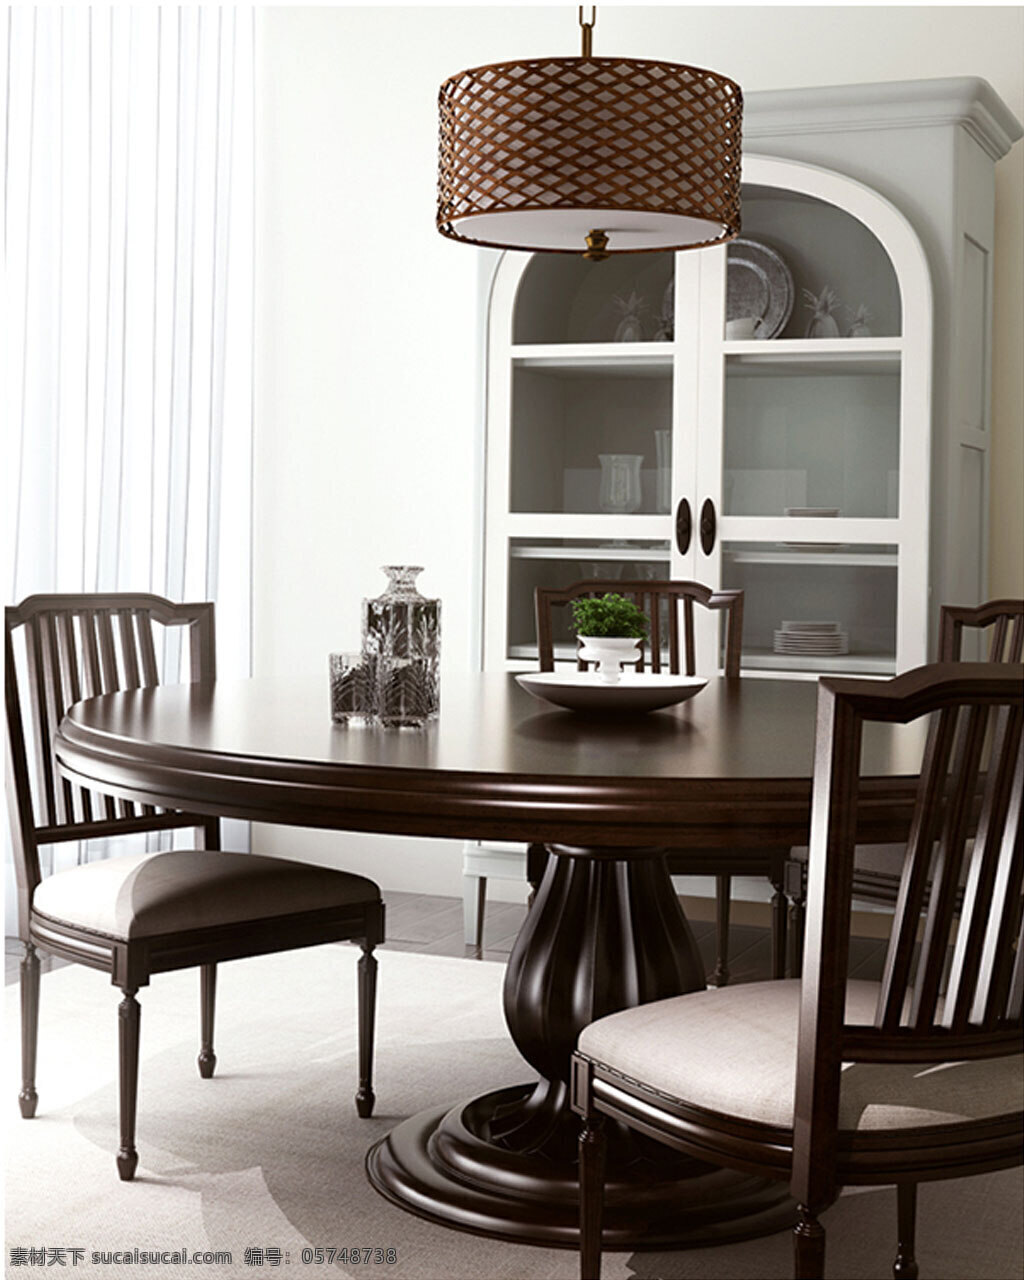 中式 客厅 max 效果图 现代中式 室内设计 红木 餐桌椅 家装效果图 max源文件 白色地板 渲染图